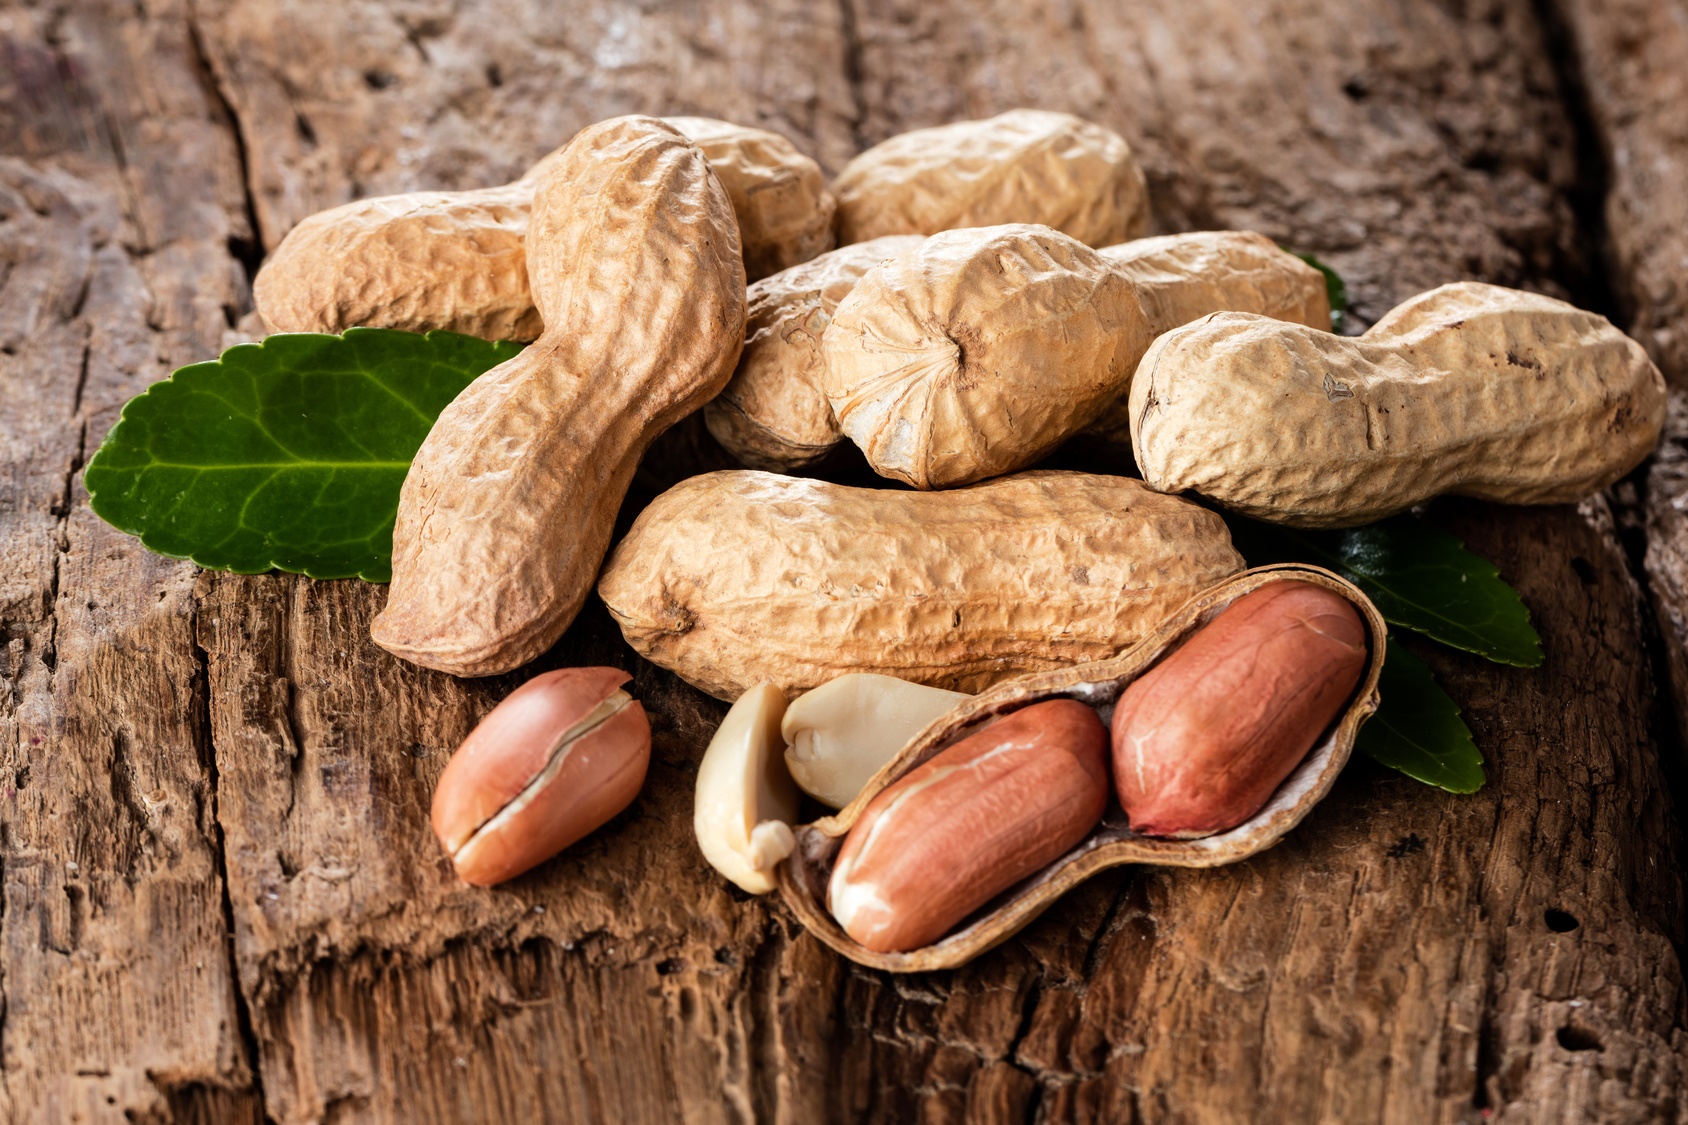 Les cacahuètes contiennent de l'arachide à l'origine d'allergies parfois mortelles. Pour l'heure, il n'existe pas de traitement. Mais d’ici à quelques années, une solution sous forme de patch arrivera peut-être en pharmacie... © karepa, Fotolia